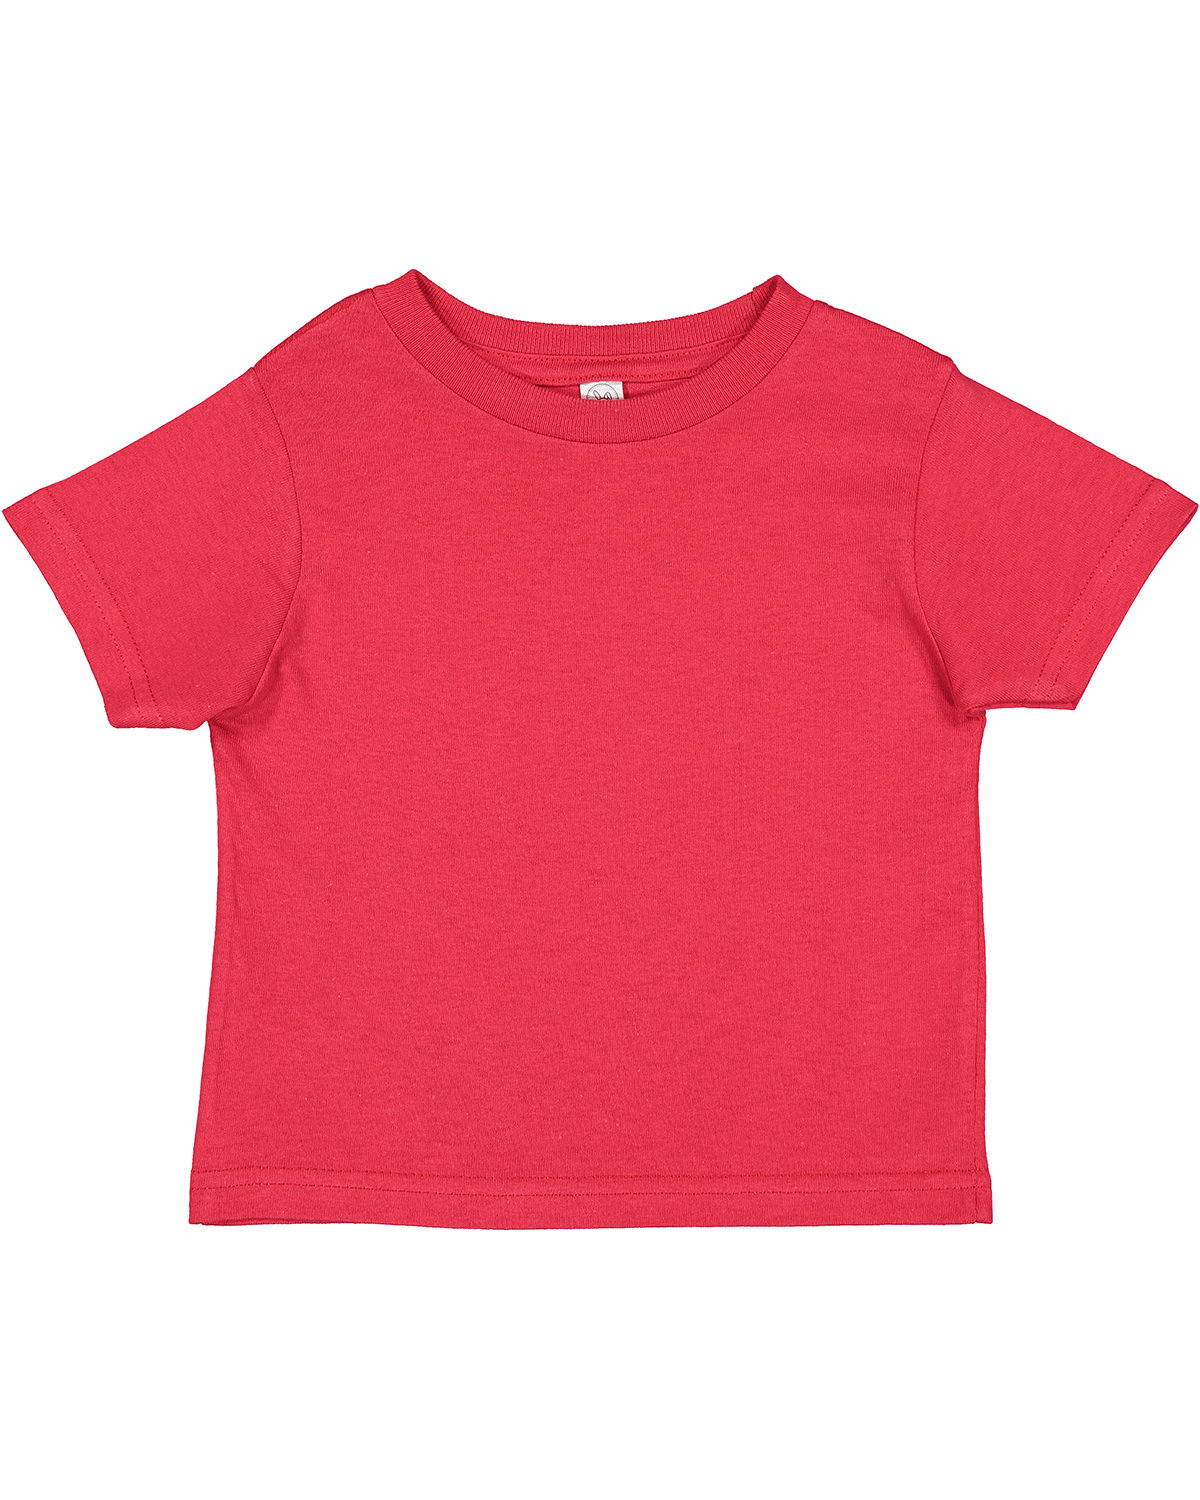 Rabbit Skins Toddler Cotton Jersey T-Shirt RED 